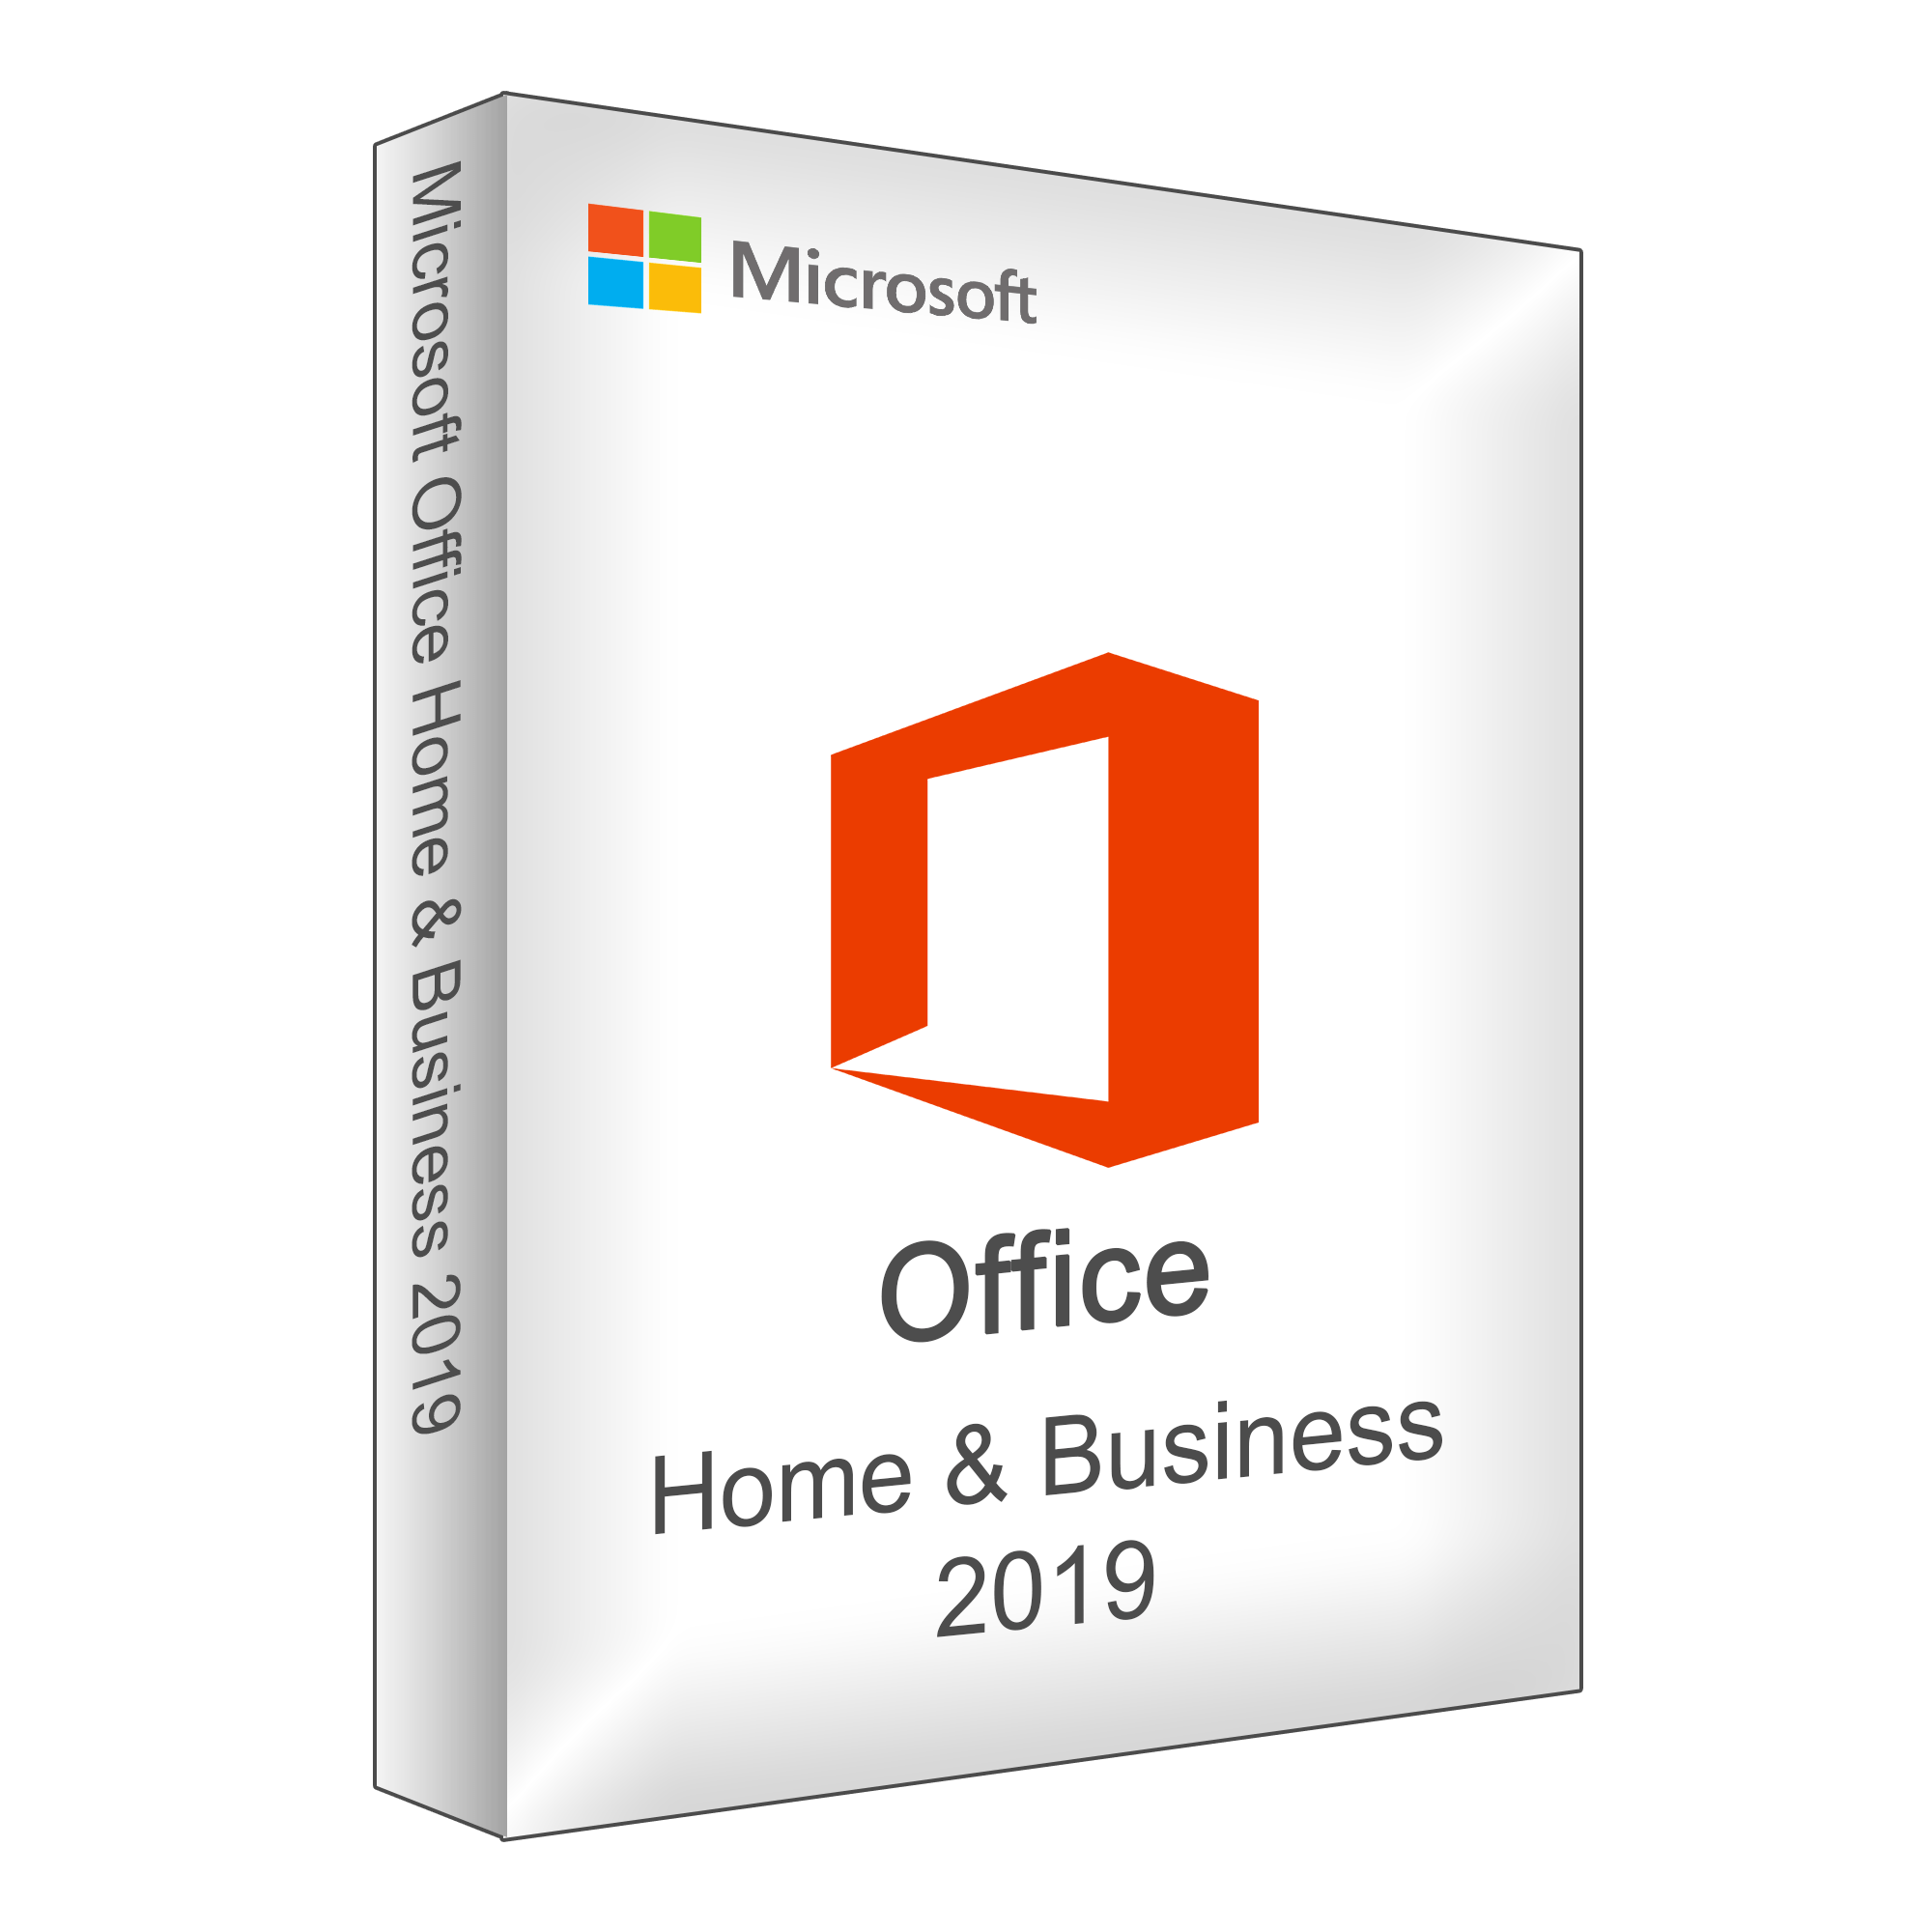 Lauft office 2019 auf windows 7 32-bit